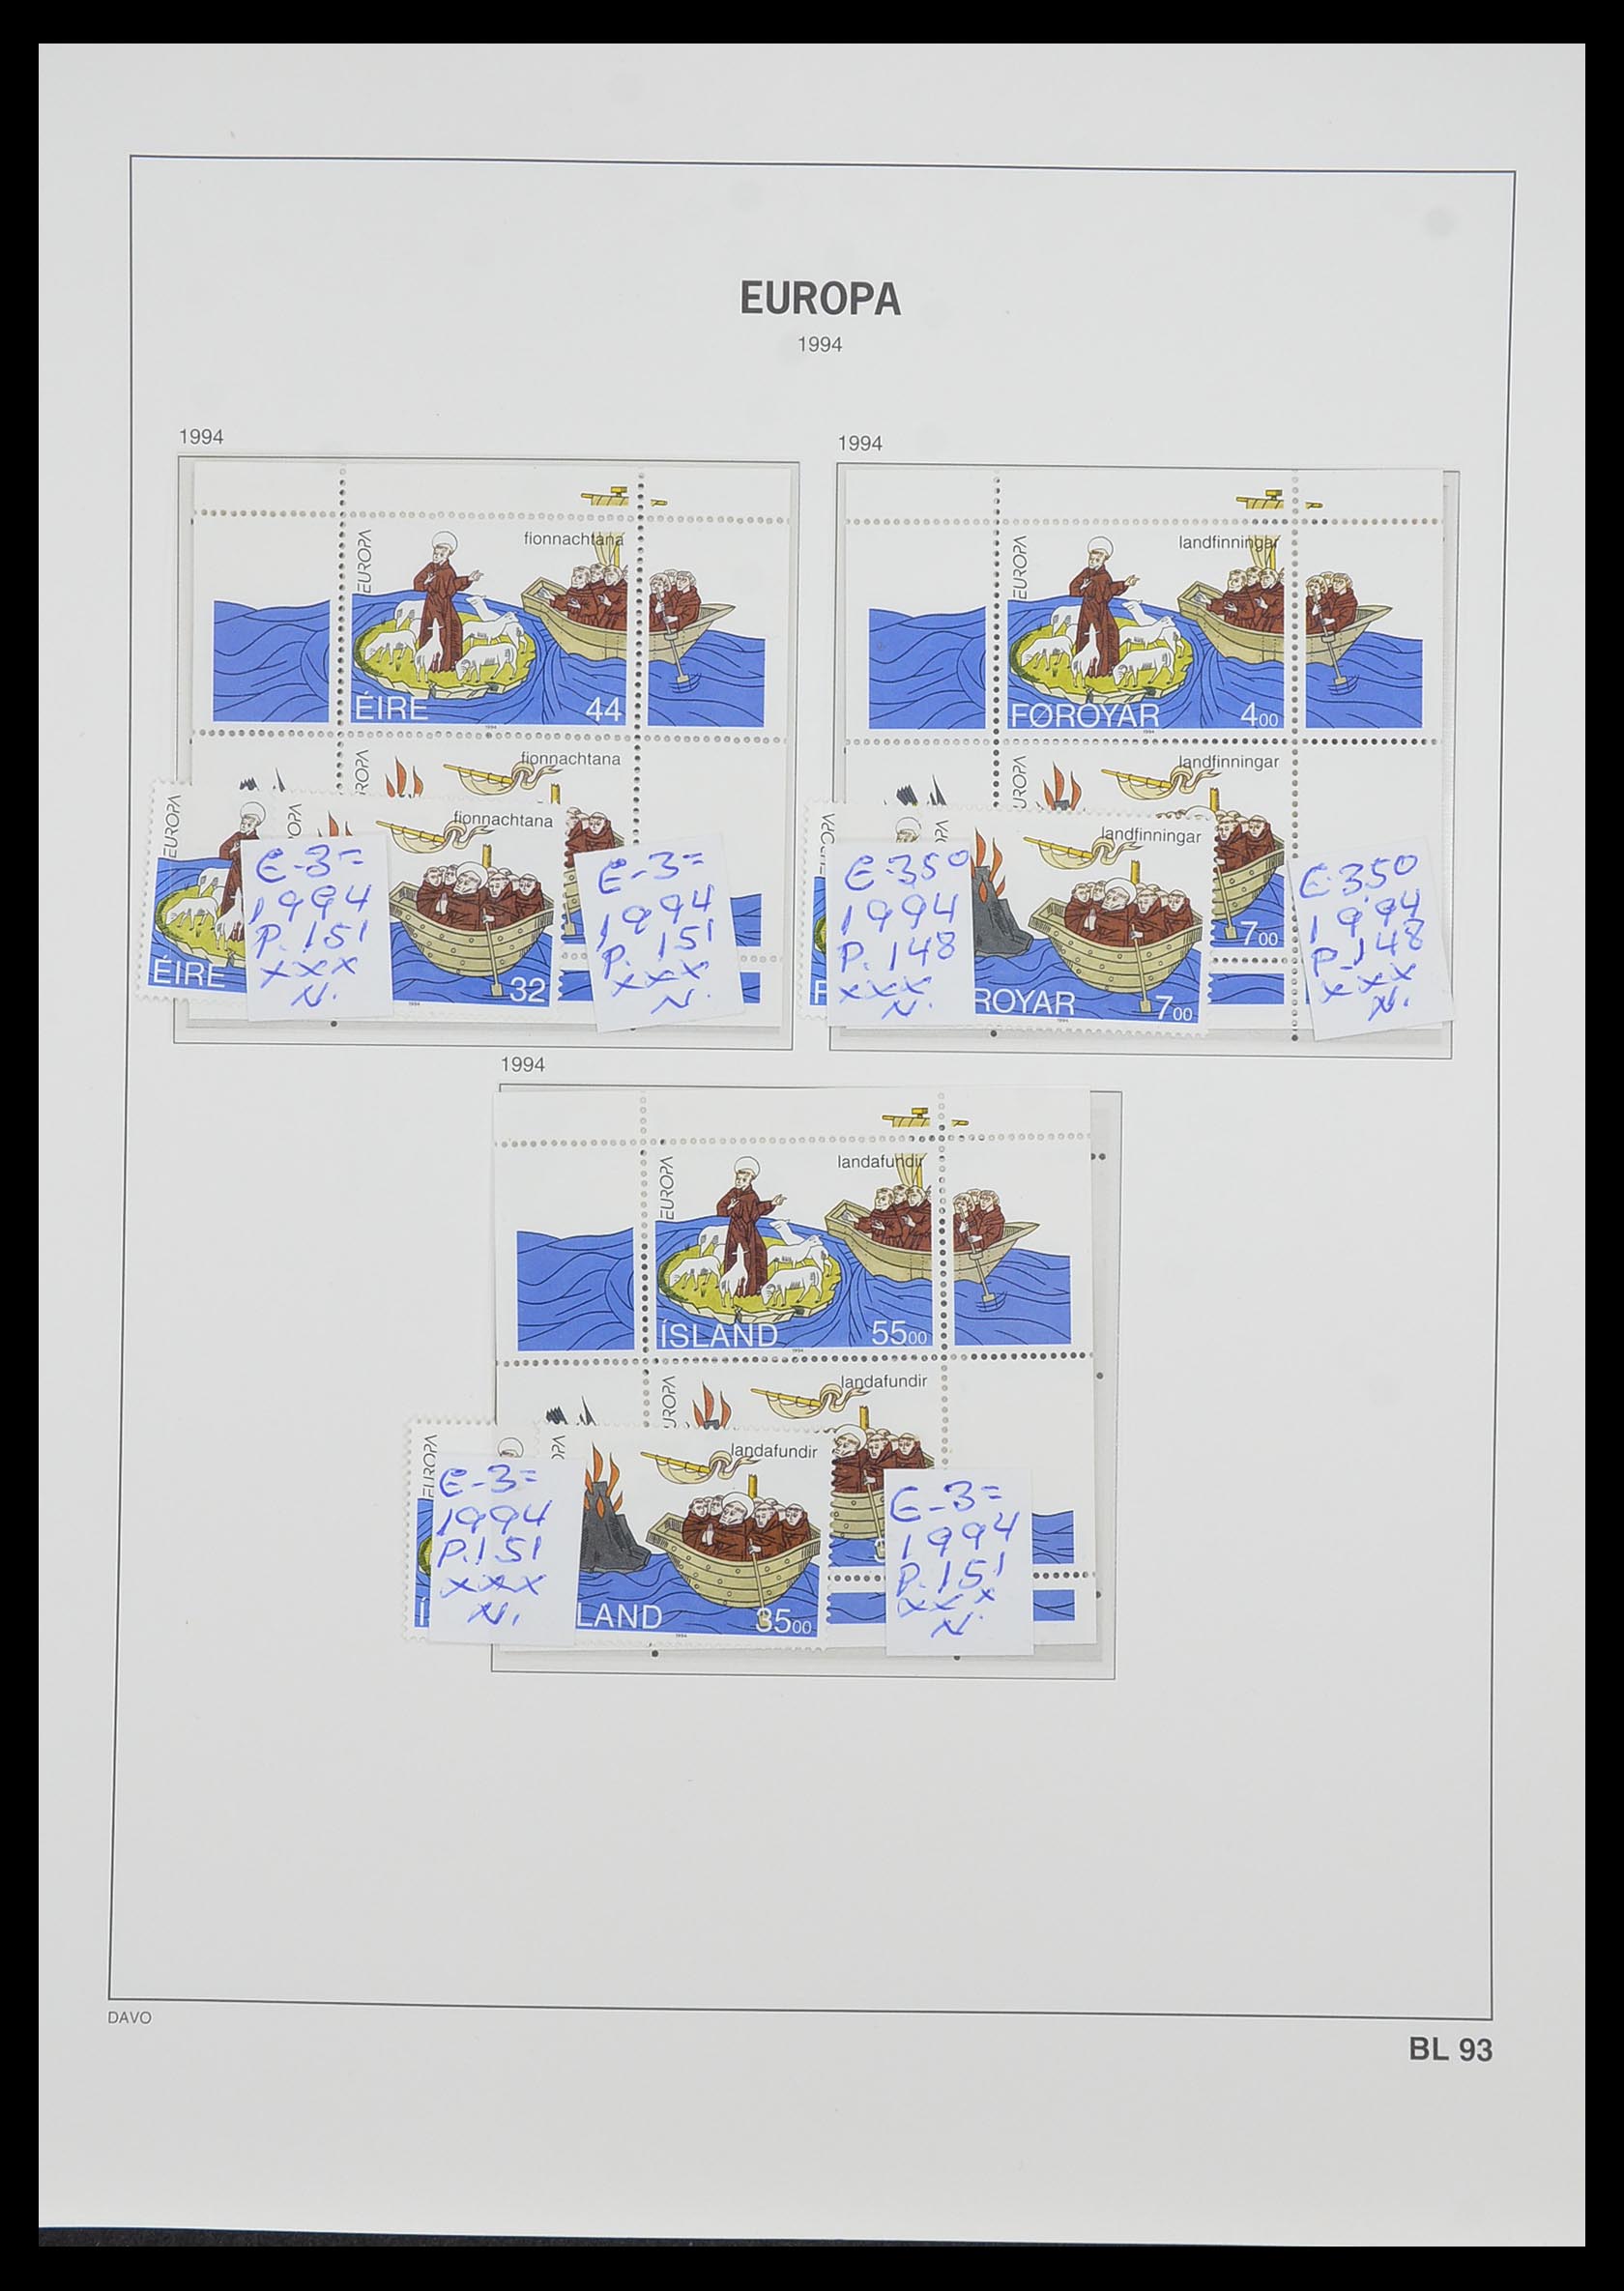 33985 081 - Stamp collection 33985 Europa CEPT souvenir sheets 1974-2014.